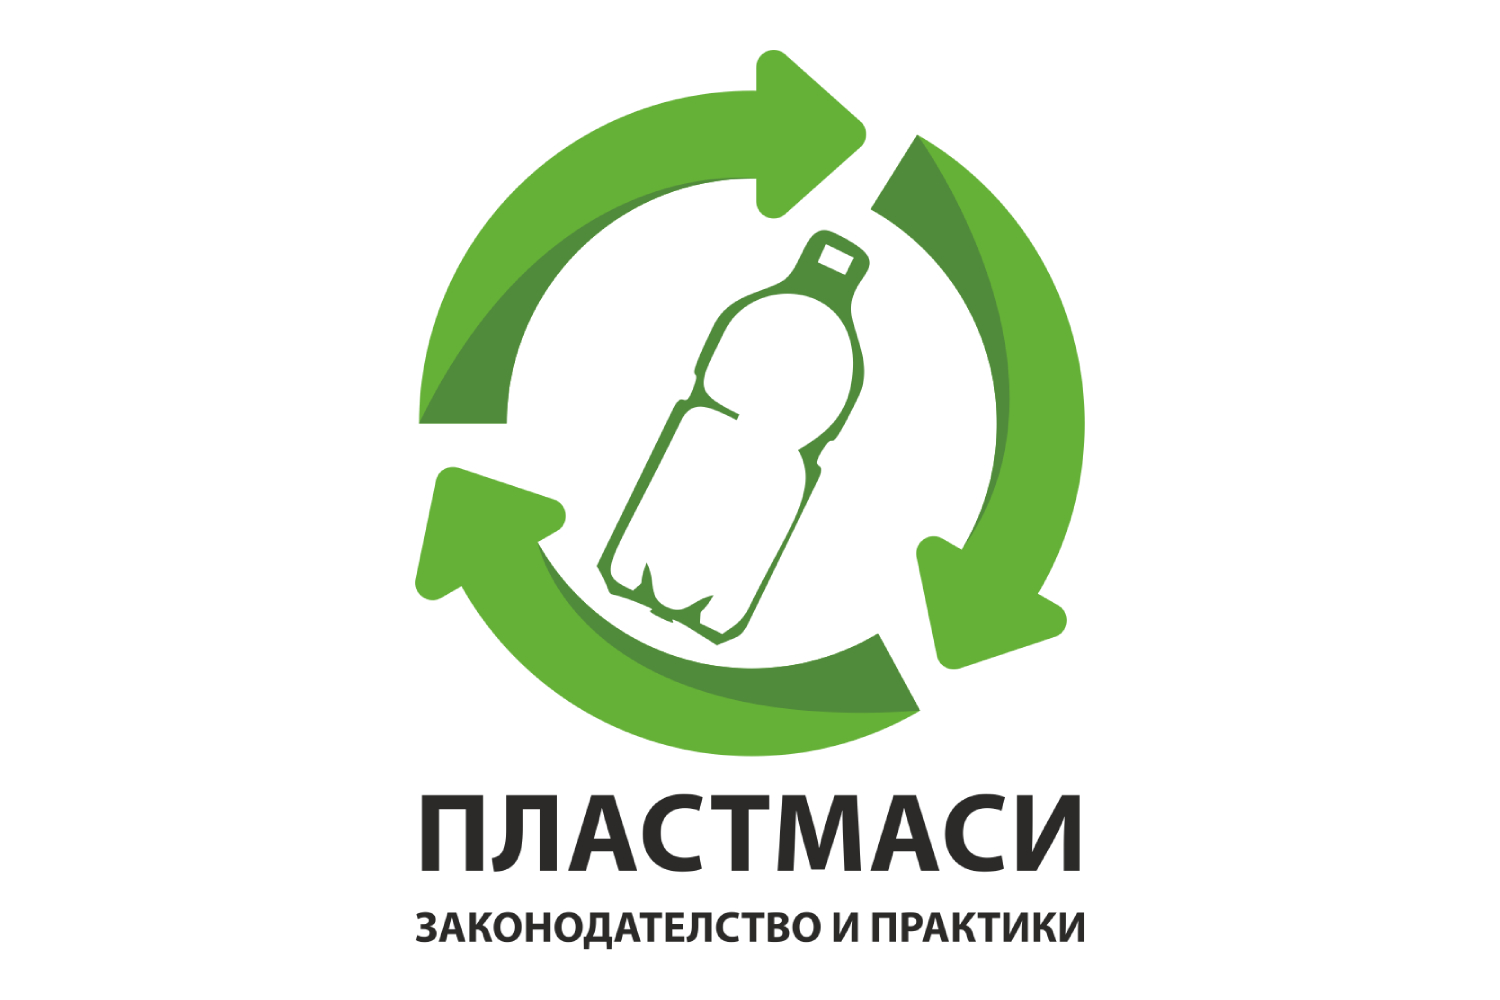 В. Търново: Среща по проблемите на пластмасовите продукти за еднократна употреба